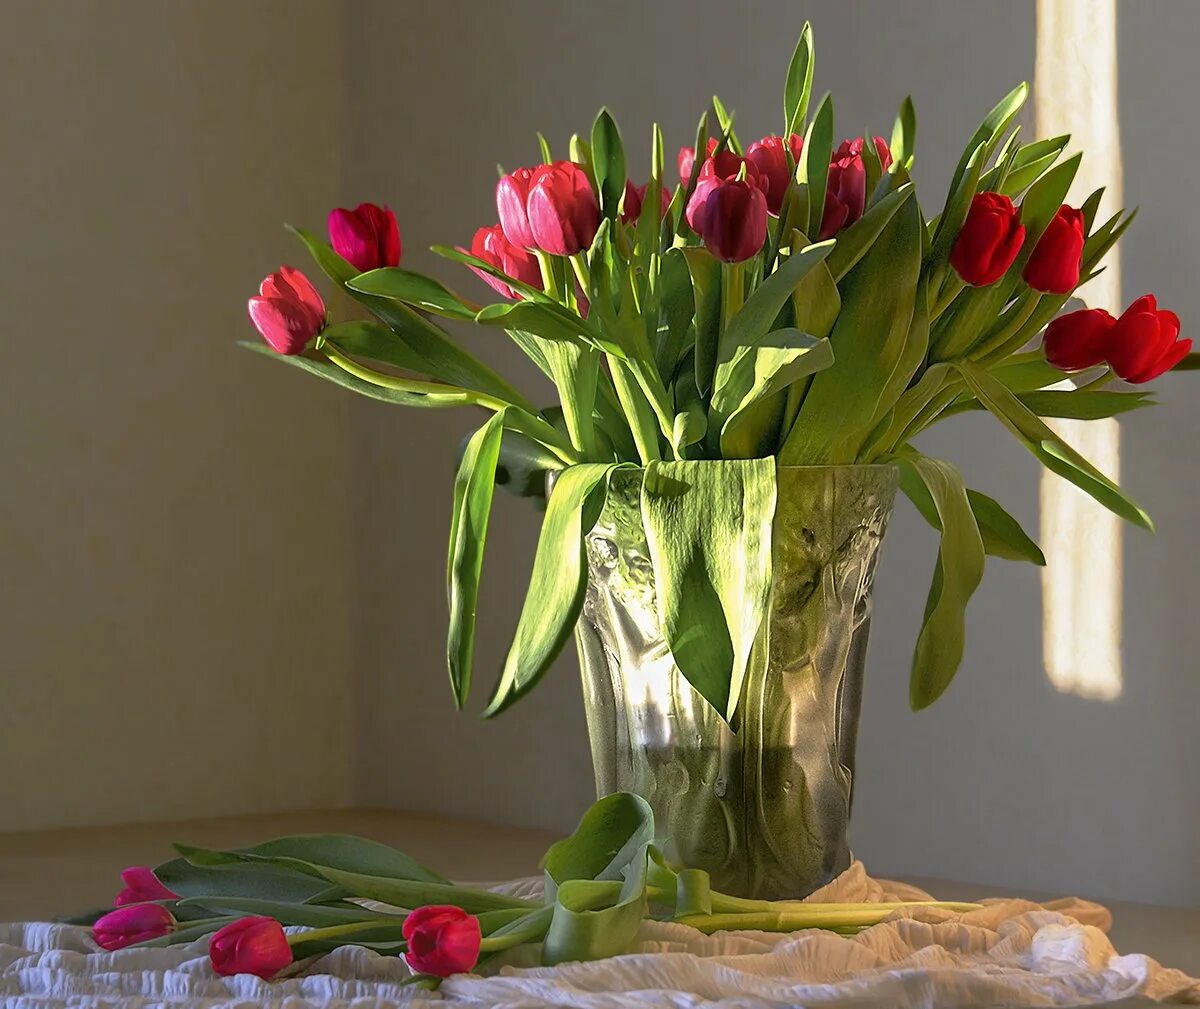 Фото тюльпанов в букете дома. Тюльпаны дома на окне. Букет тюльпанов. Тюльпаны в вазе. Ваза с тюльпанами.